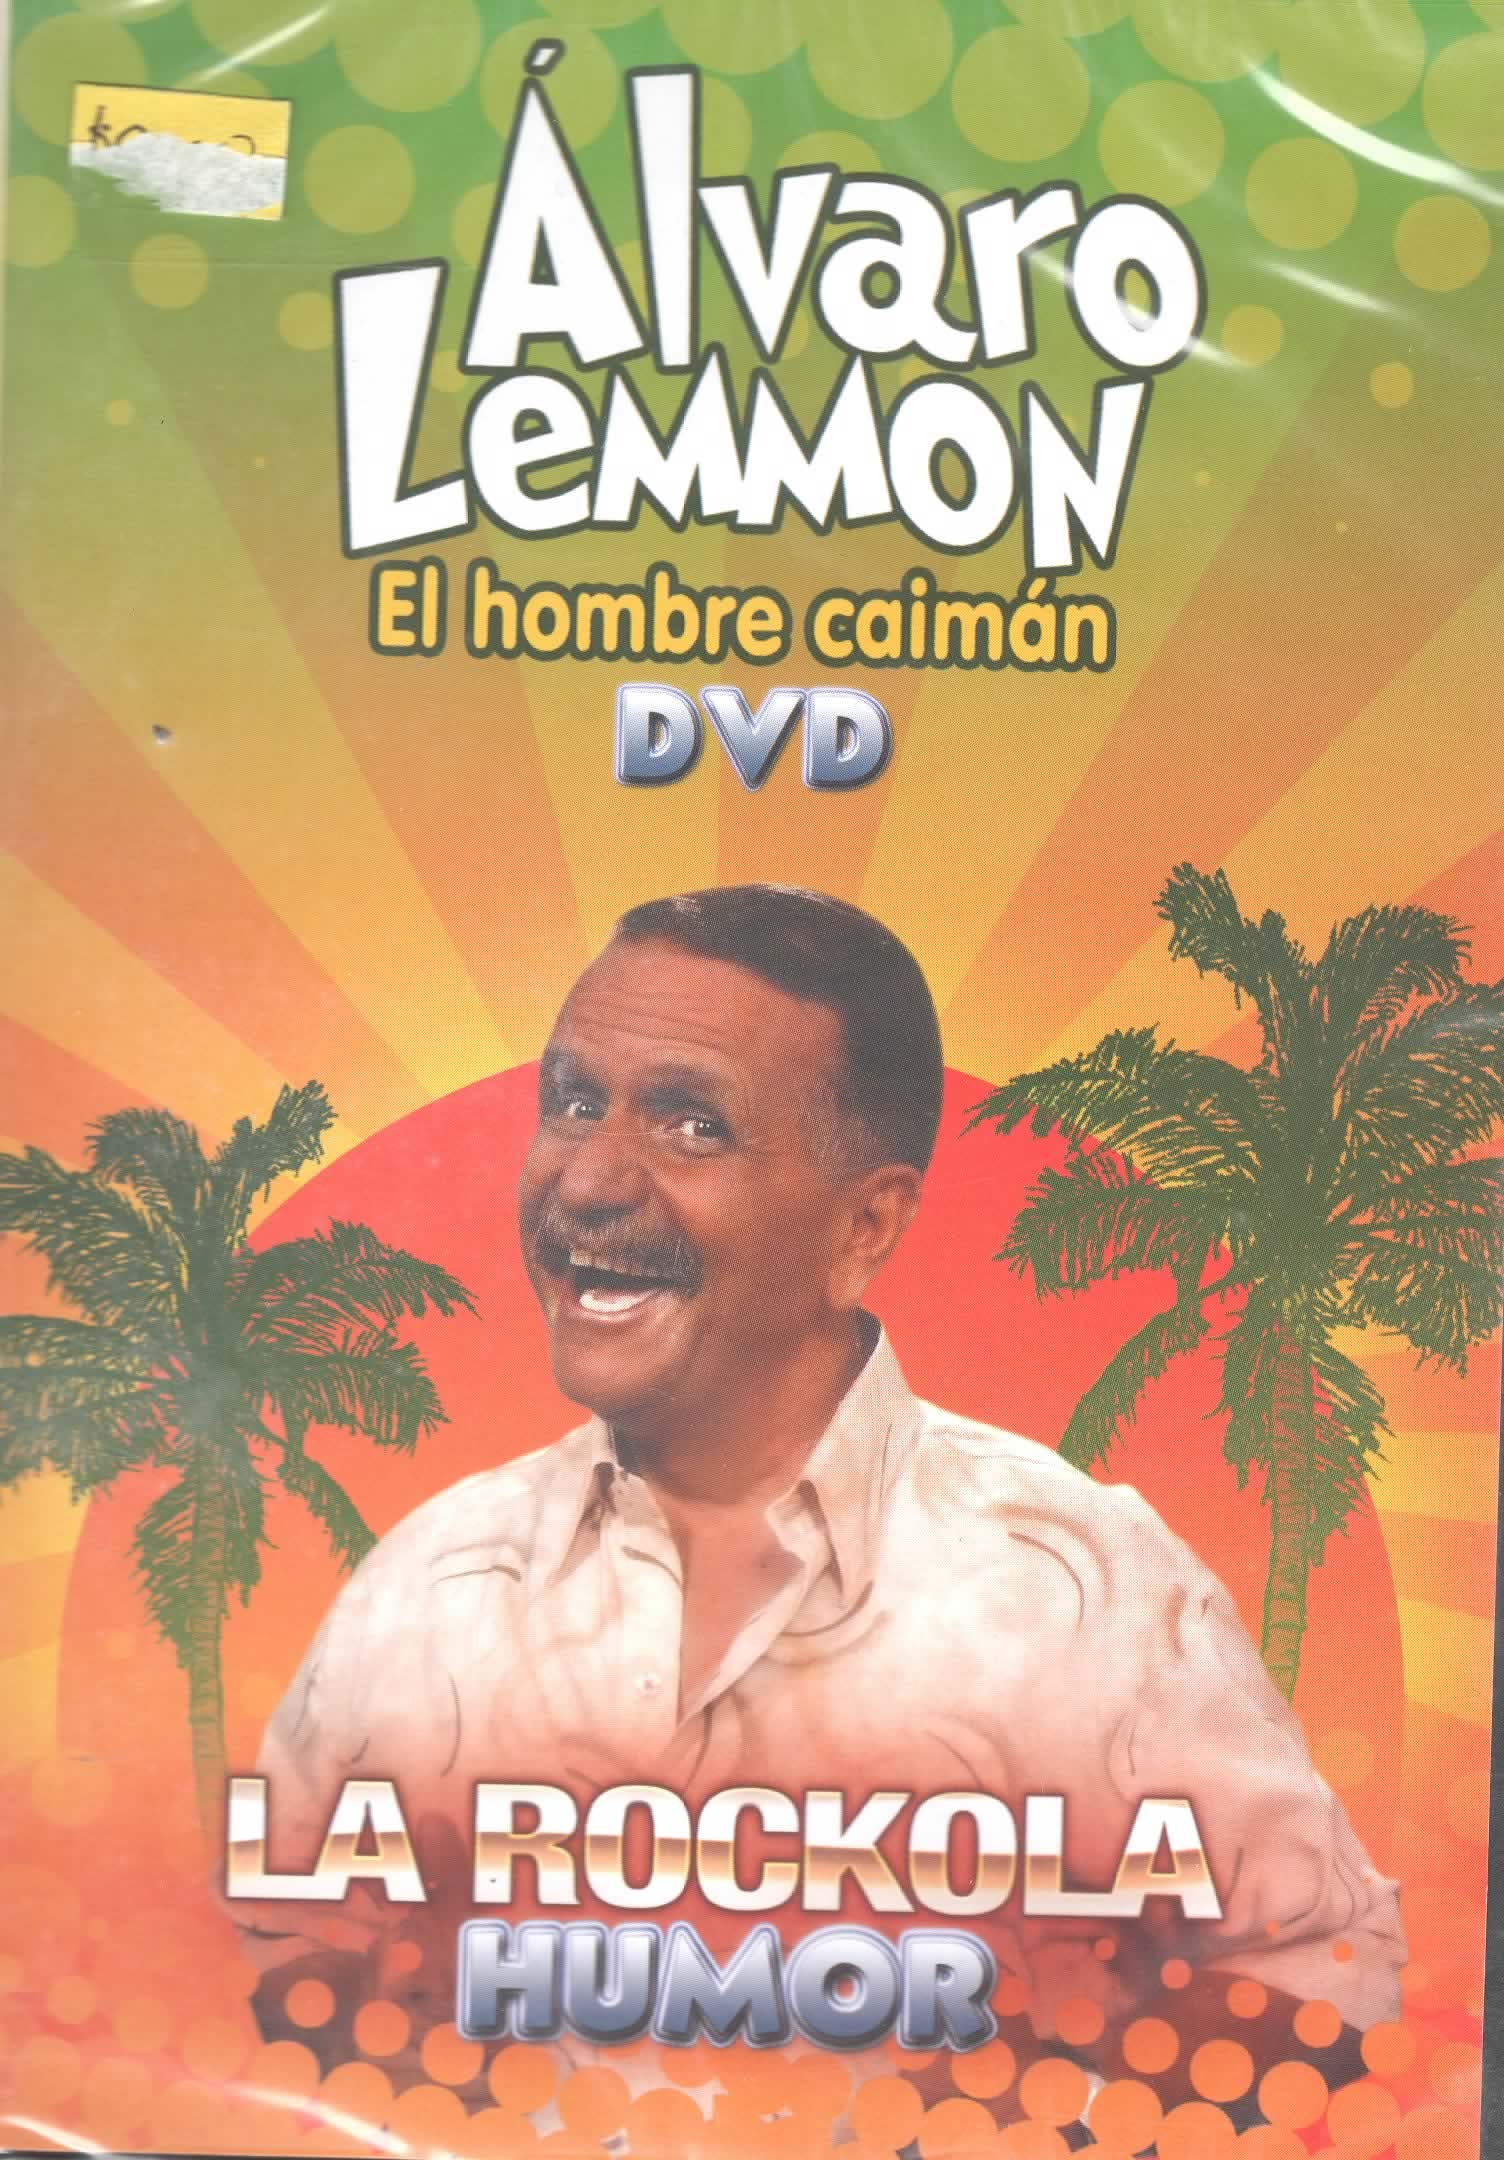 DVD Álvaro Lemmon - La rockola humor